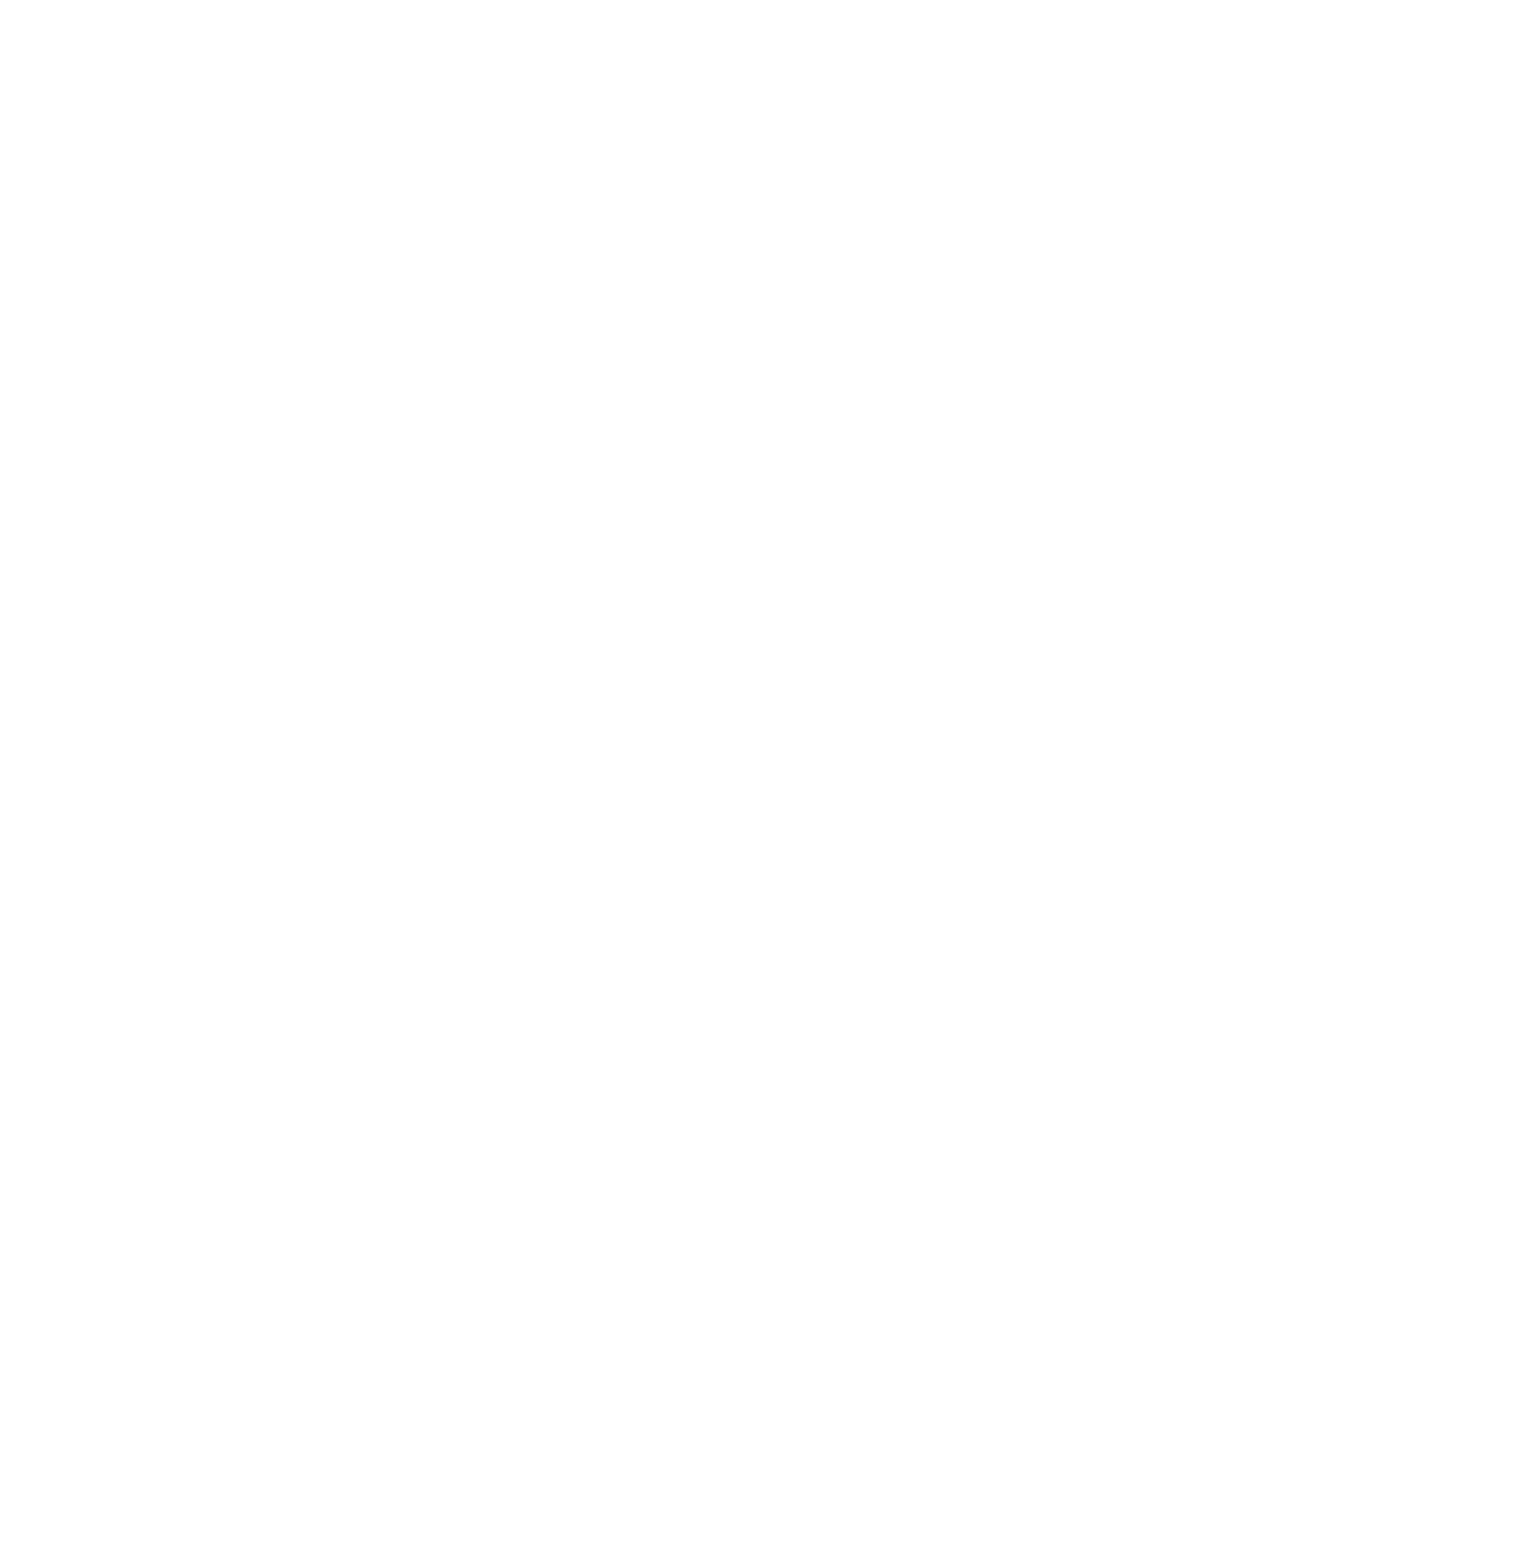 Sabesp logo for dark backgrounds (transparent PNG)